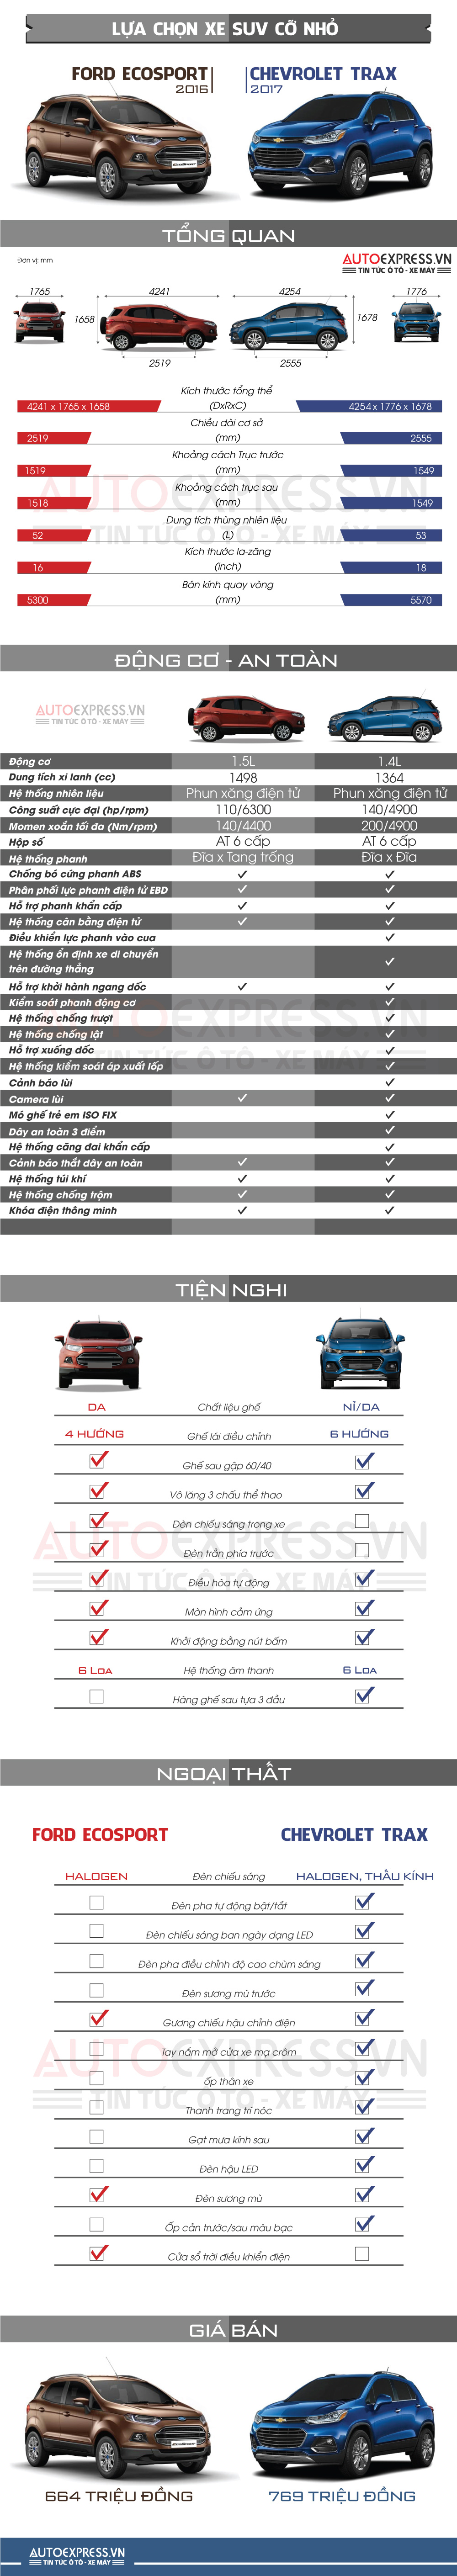 So sánh Ford Ecosport và Chevrolet Trax ở phân khúc SUV cỡ nhỏ